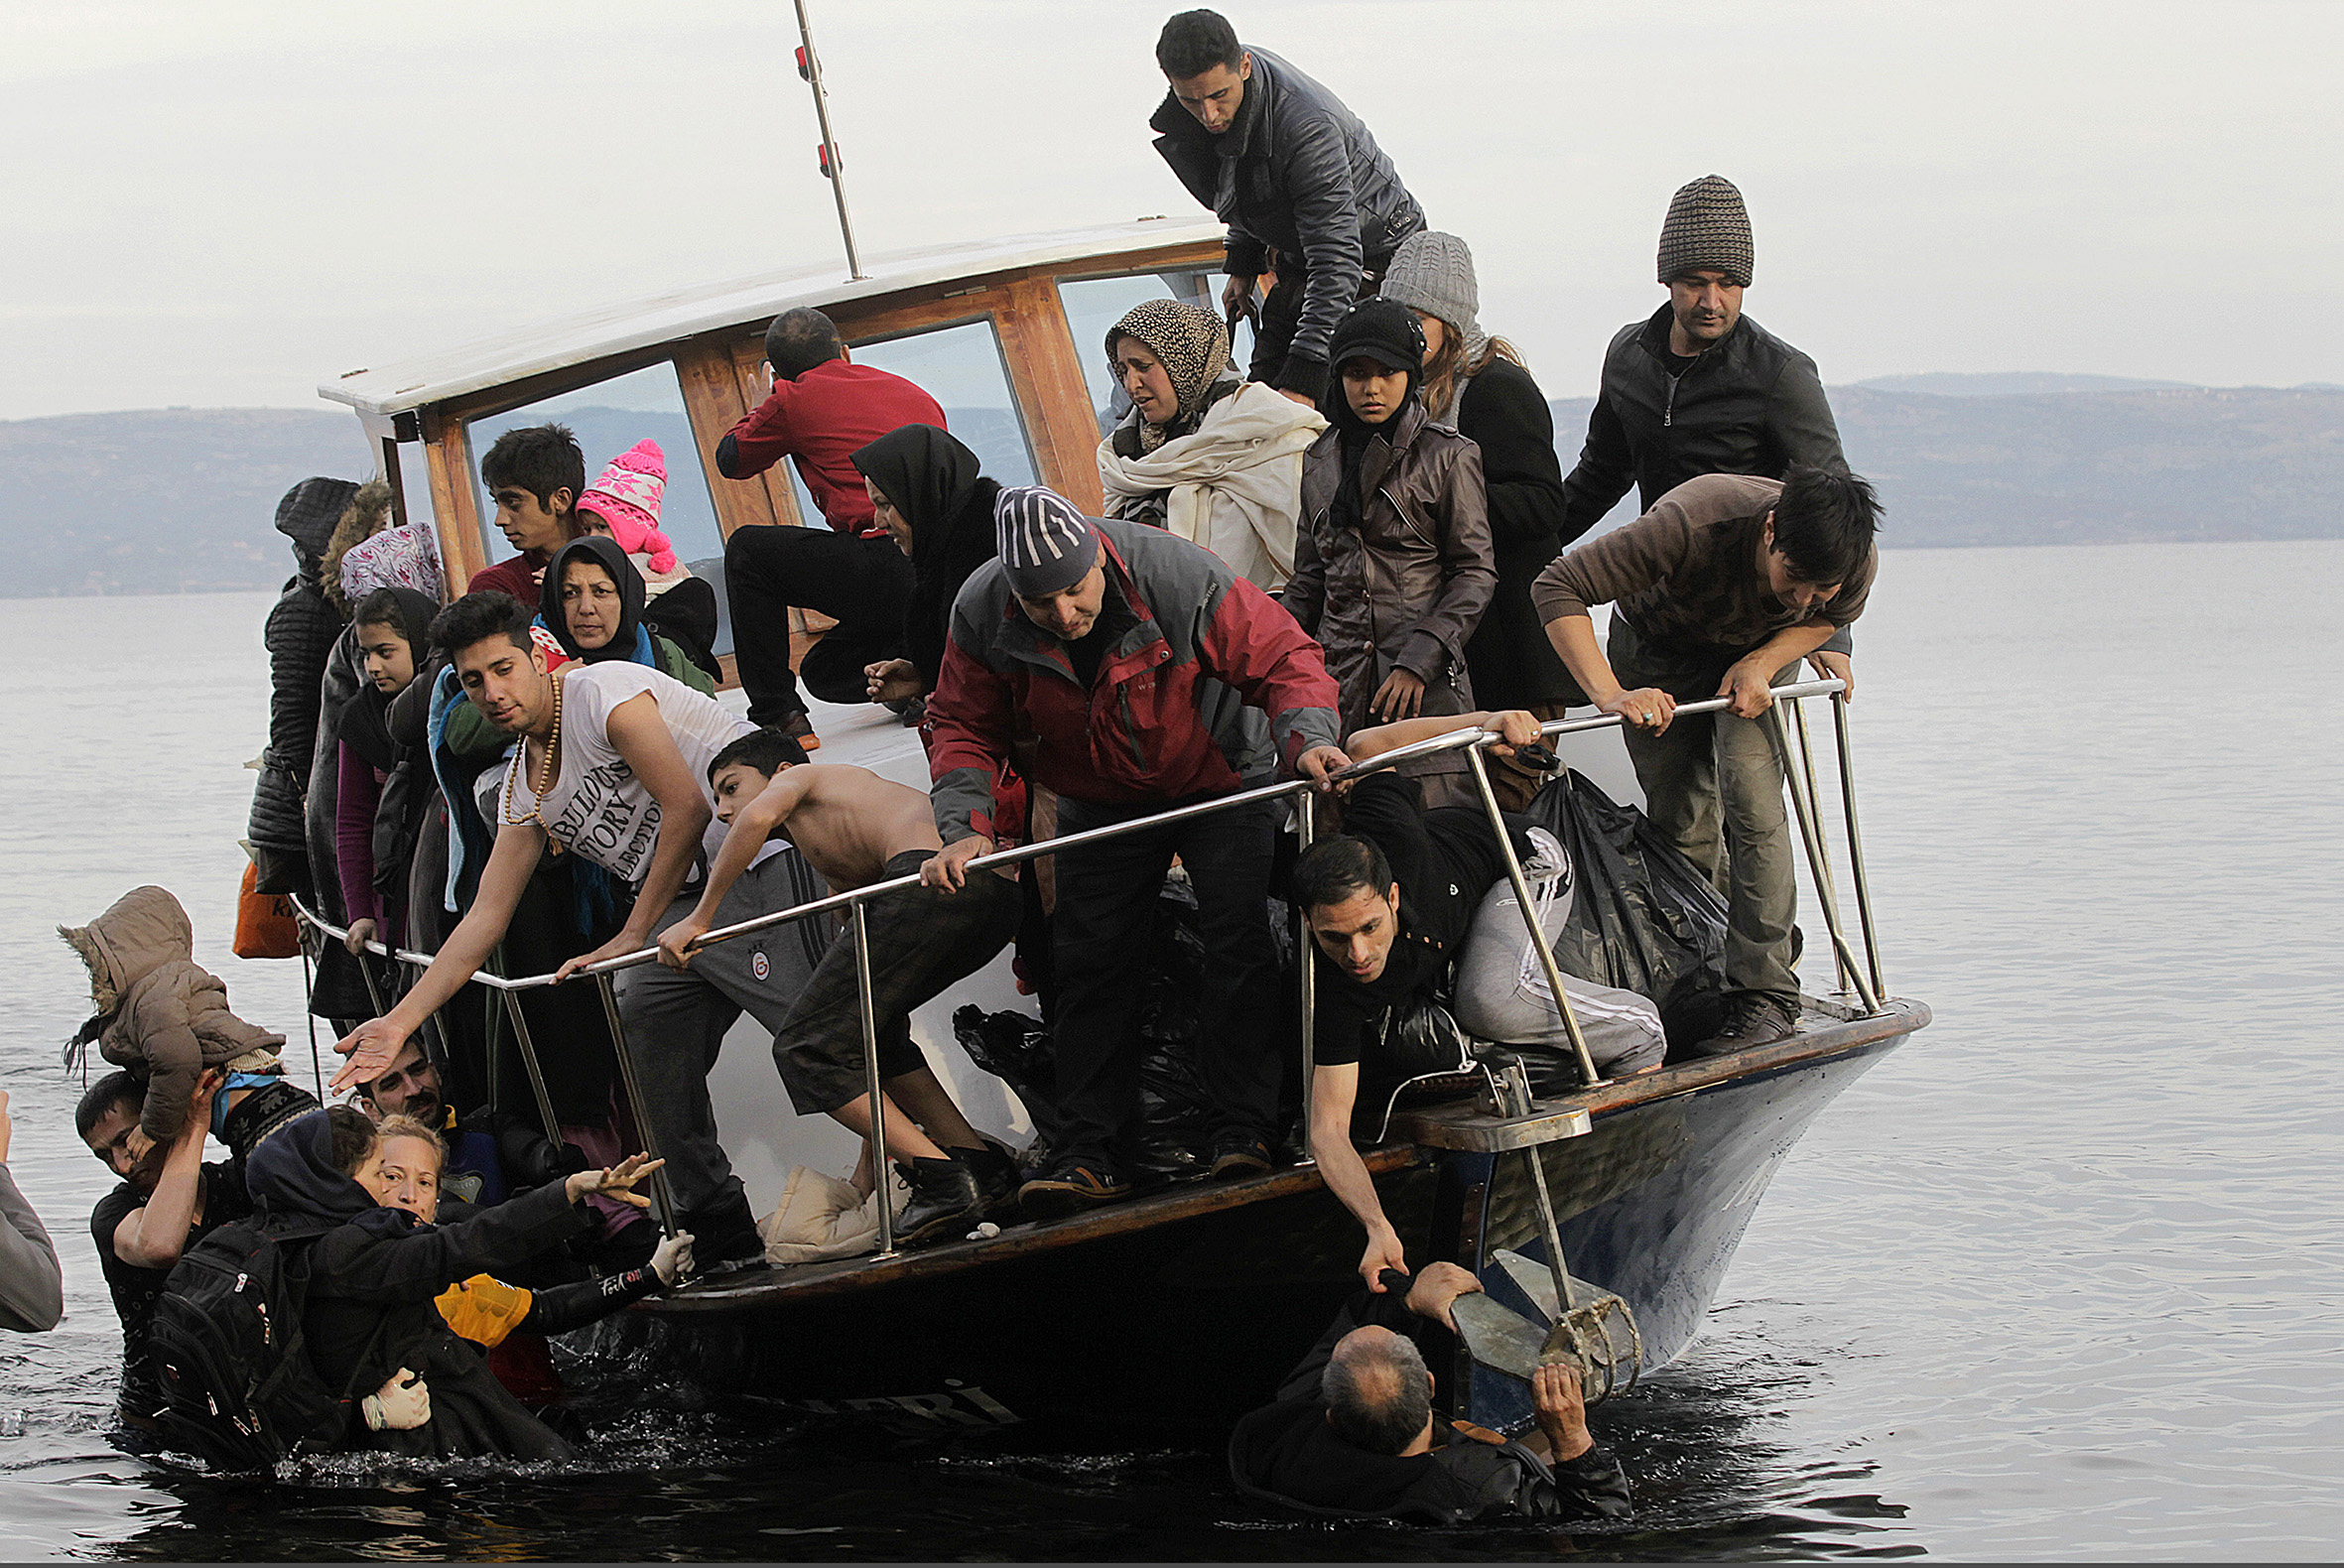 Συνεχίζονται οι προσφυγικές ροές στα νησιά του βορειοανατολικού Αιγαίου